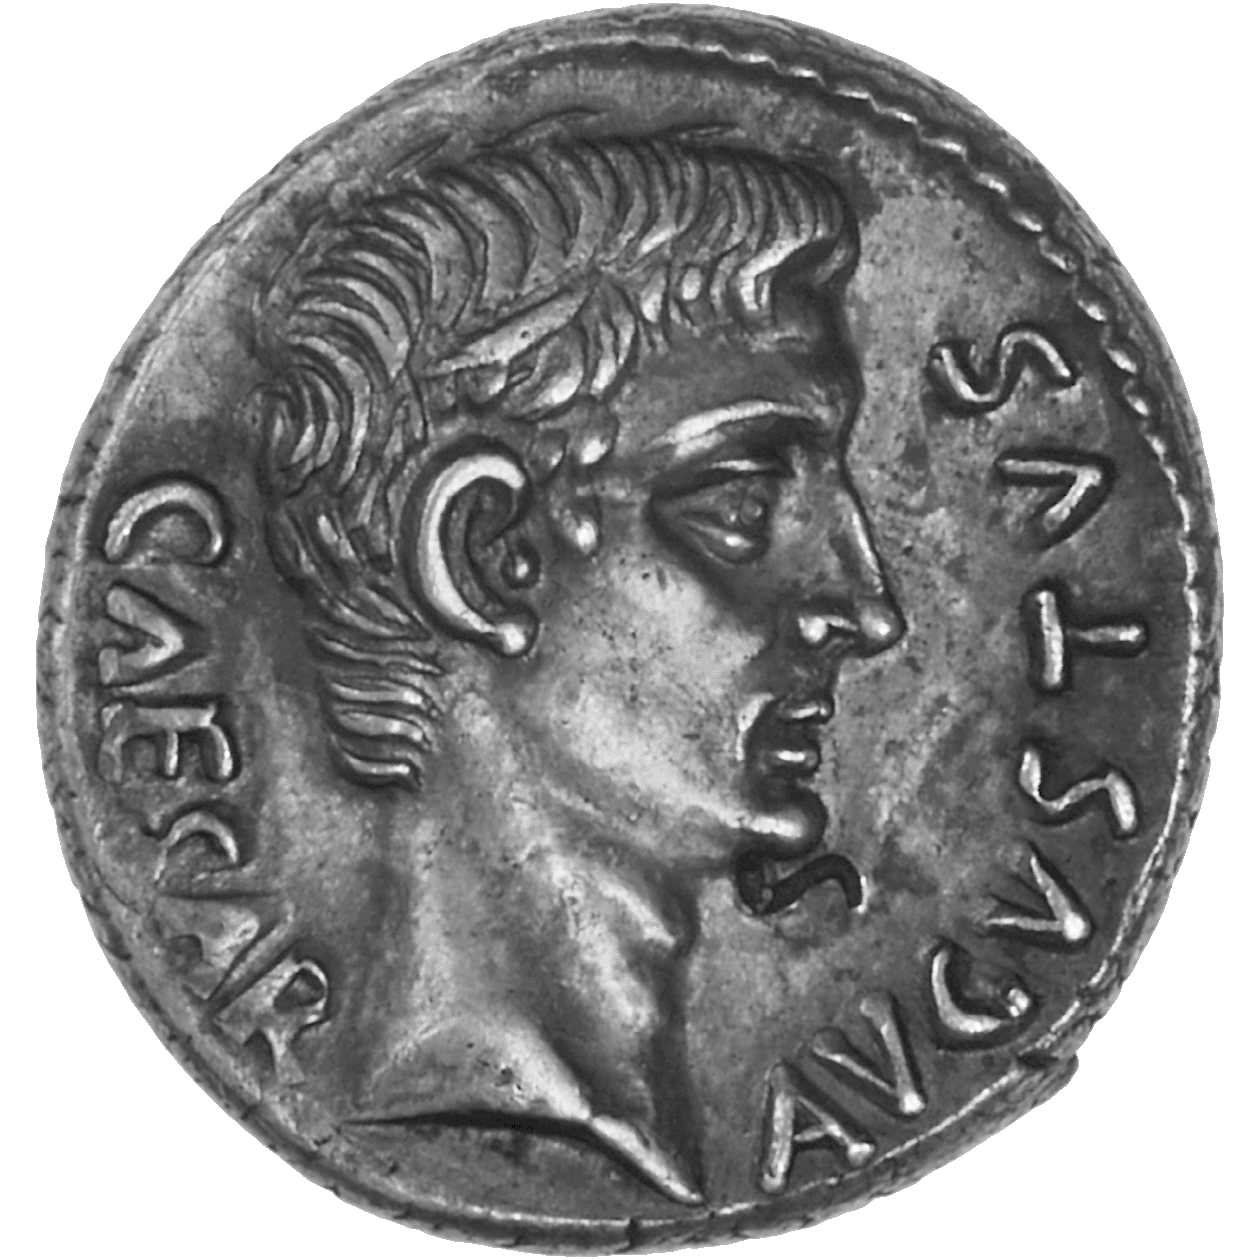 Roman Empire, Octavian Augustus, Denarius (obverse)